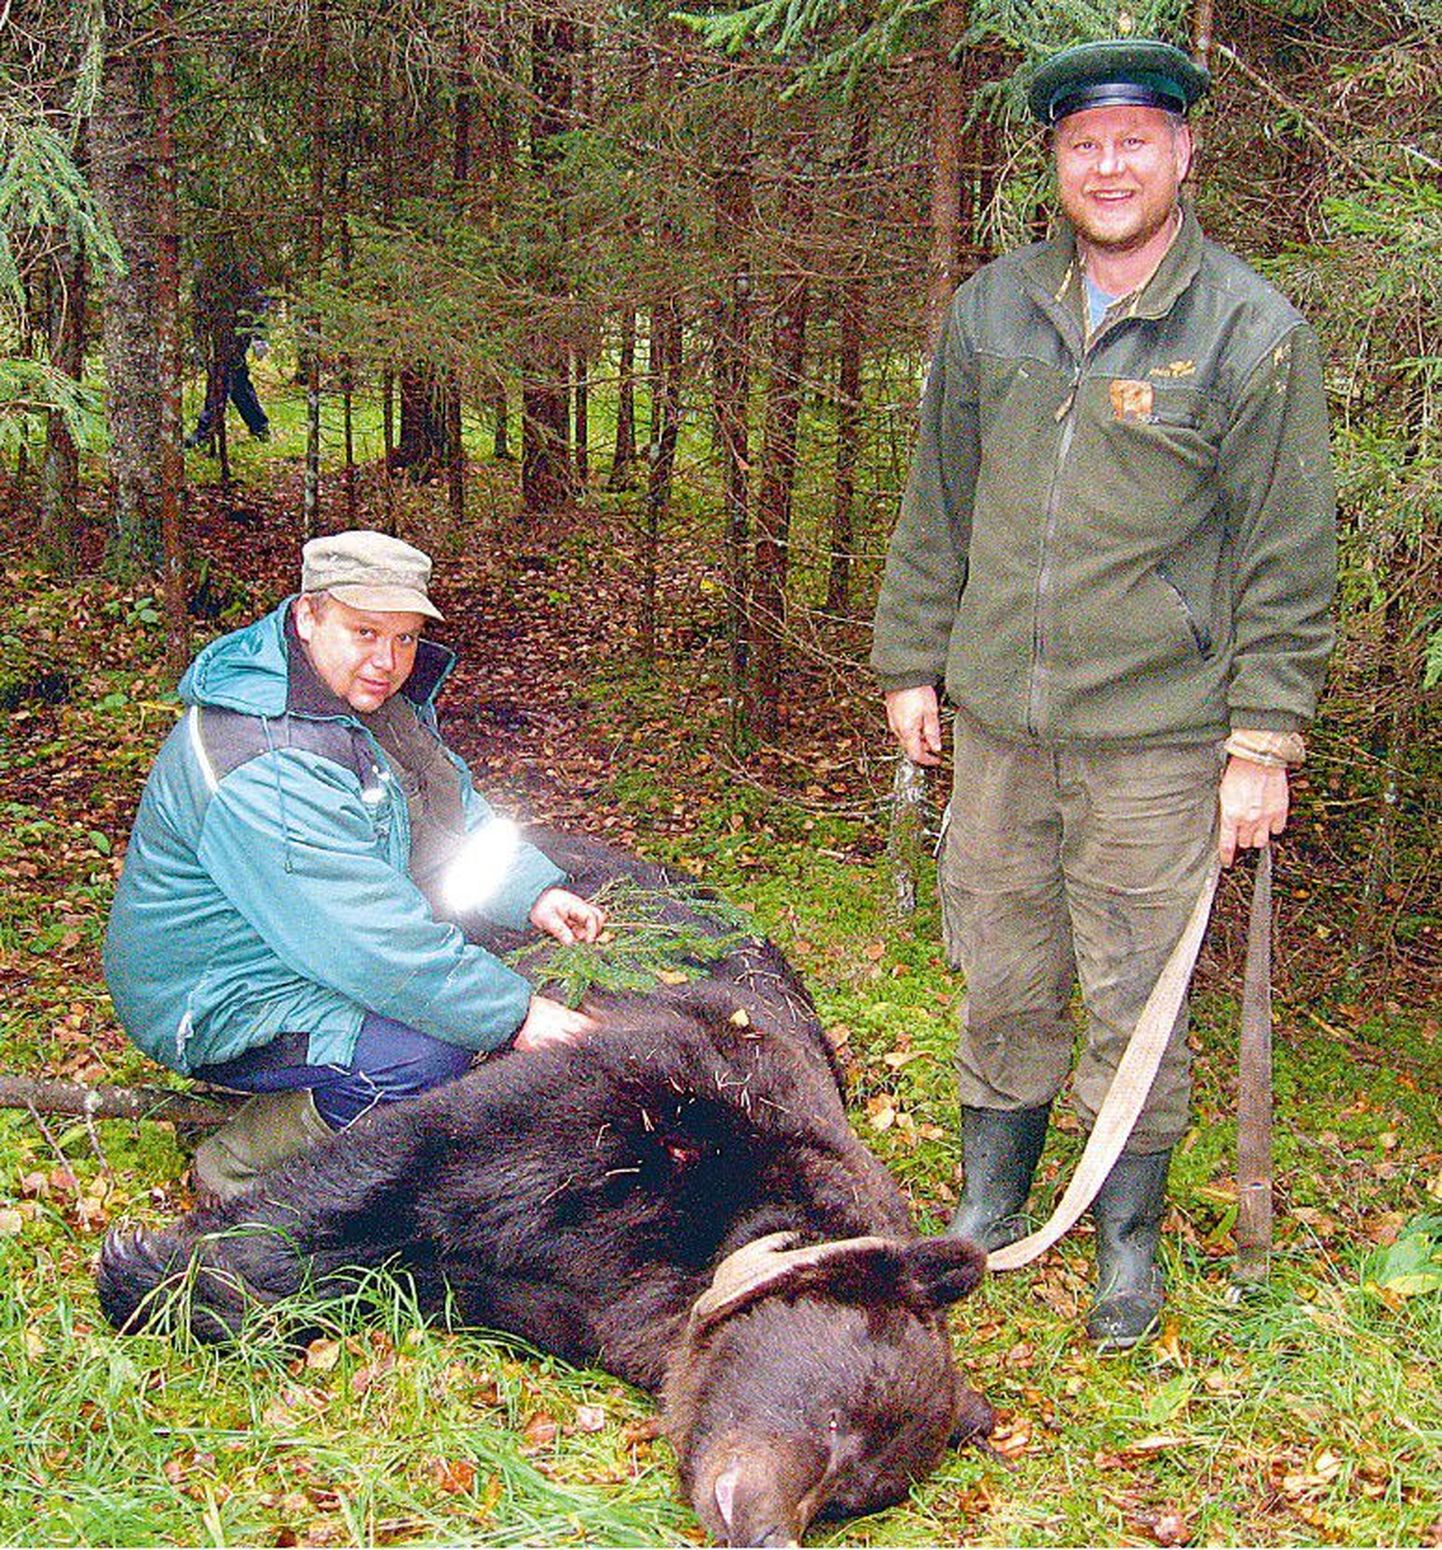 Pärnumaa Jahimeeste Liidu jahimees Arne Aidberg (vasakul) tabas Pööravere jahipiirkonnas 260-kilogrammise isakaru. Eduka küti kõrval seisab jahikaaslane Urmas Osula.